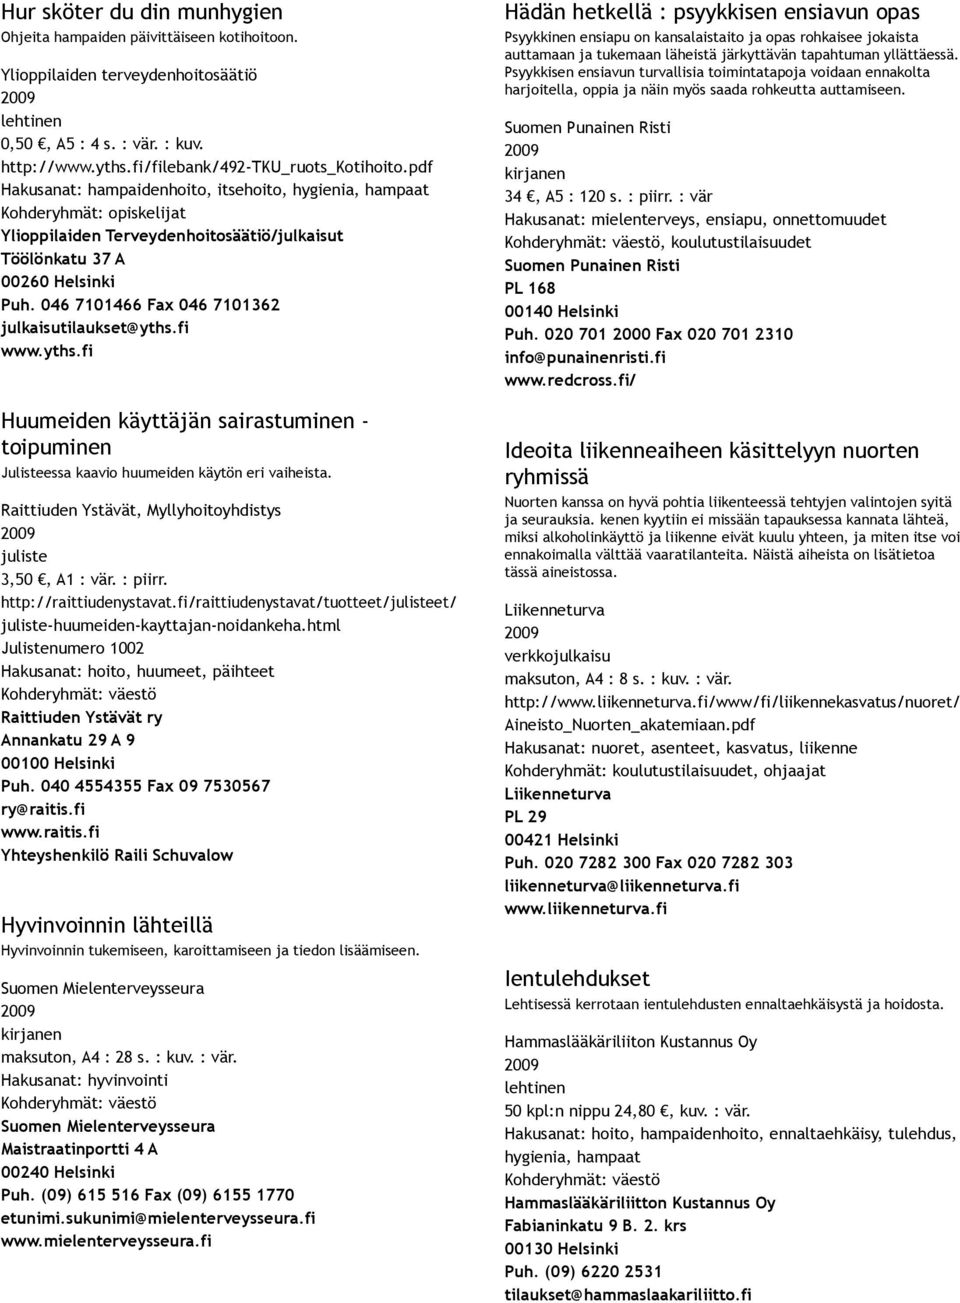 046 7101466 Fax 046 7101362 julkaisutilaukset@yths.fi www.yths.fi Huumeiden käyttäjän sairastuminen toipuminen Julisteessa kaavio huumeiden käytön eri vaiheista.